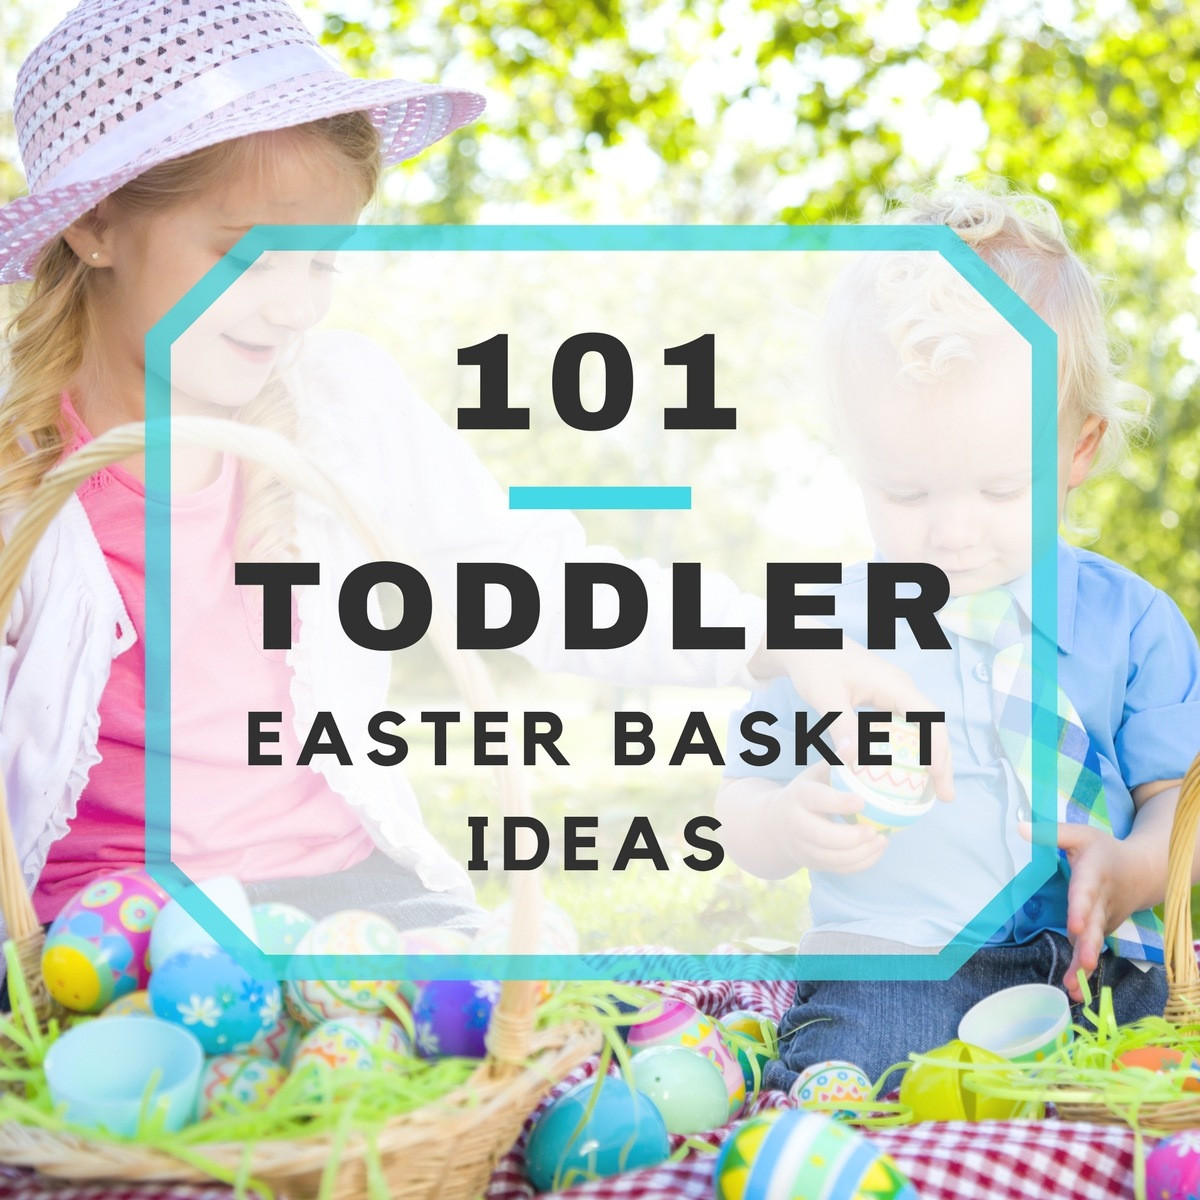 Toddler Easter Baskets Ideas
 101 Toddler Easter Basket Ideas